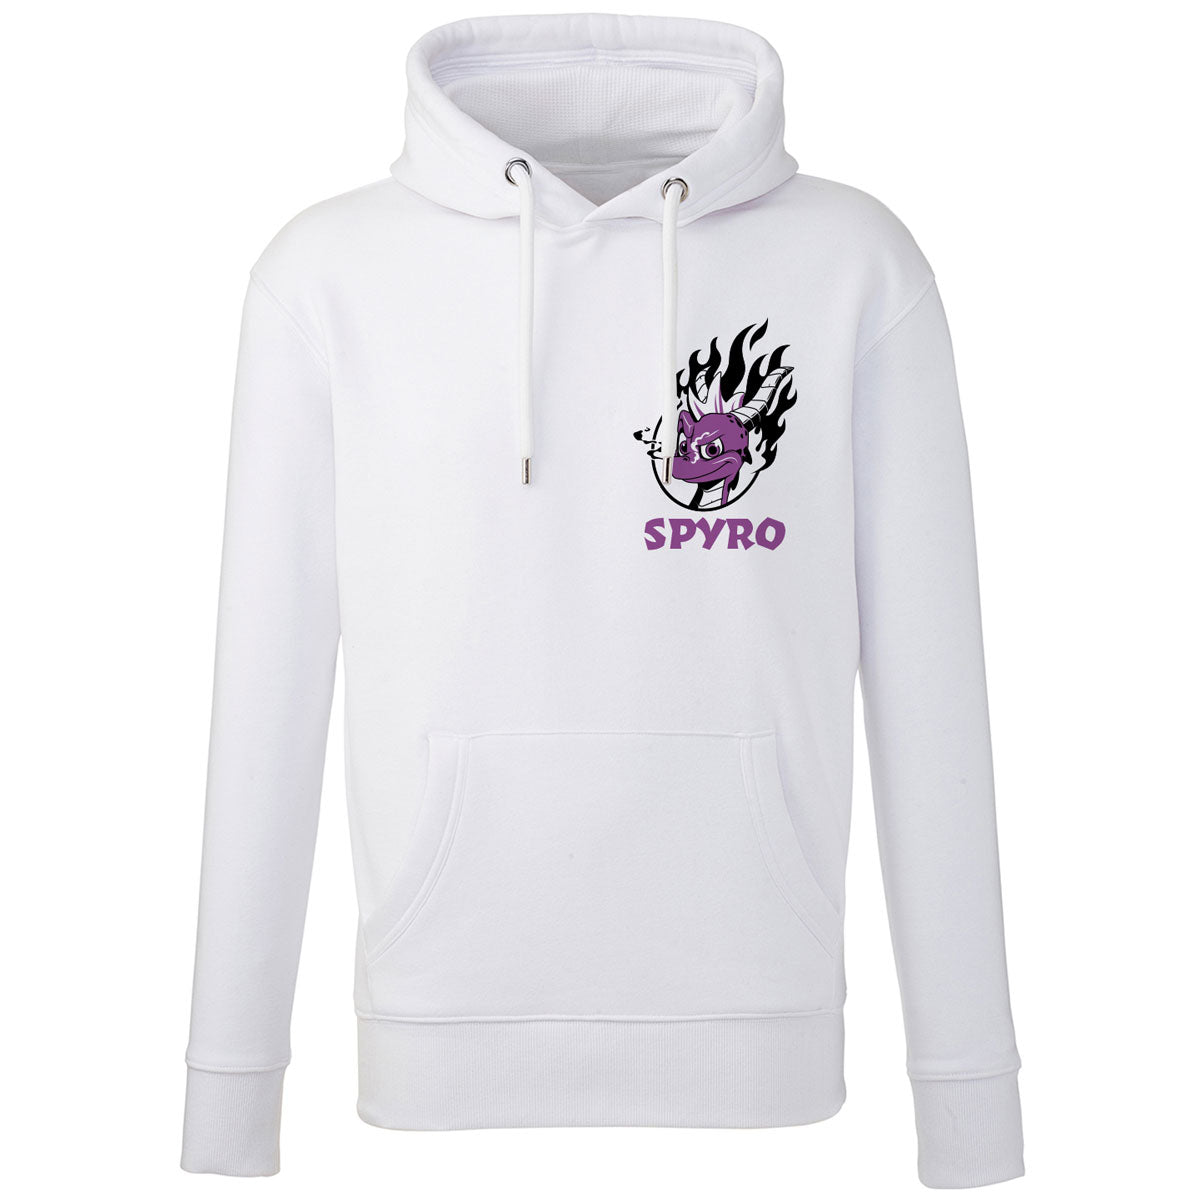 Spyro Flaming Hoodie – We Love This